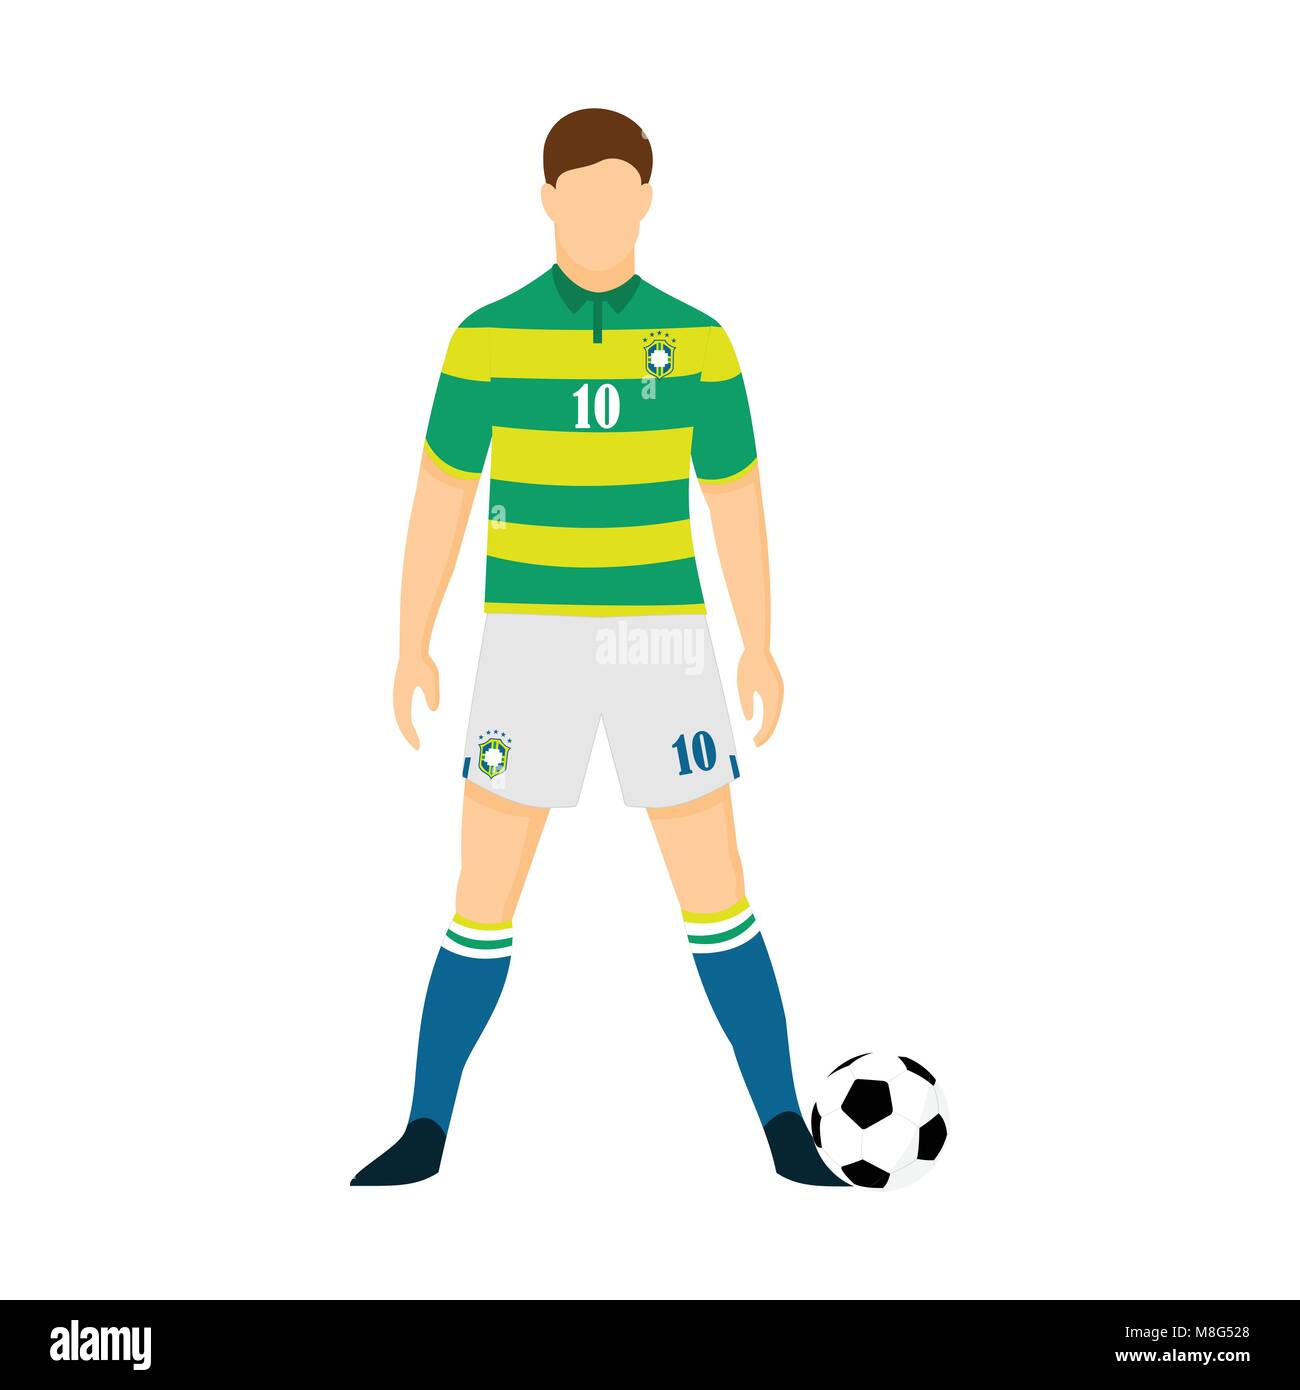 Camiseta Del Fútbol Del Brasil Ilustración del Vector